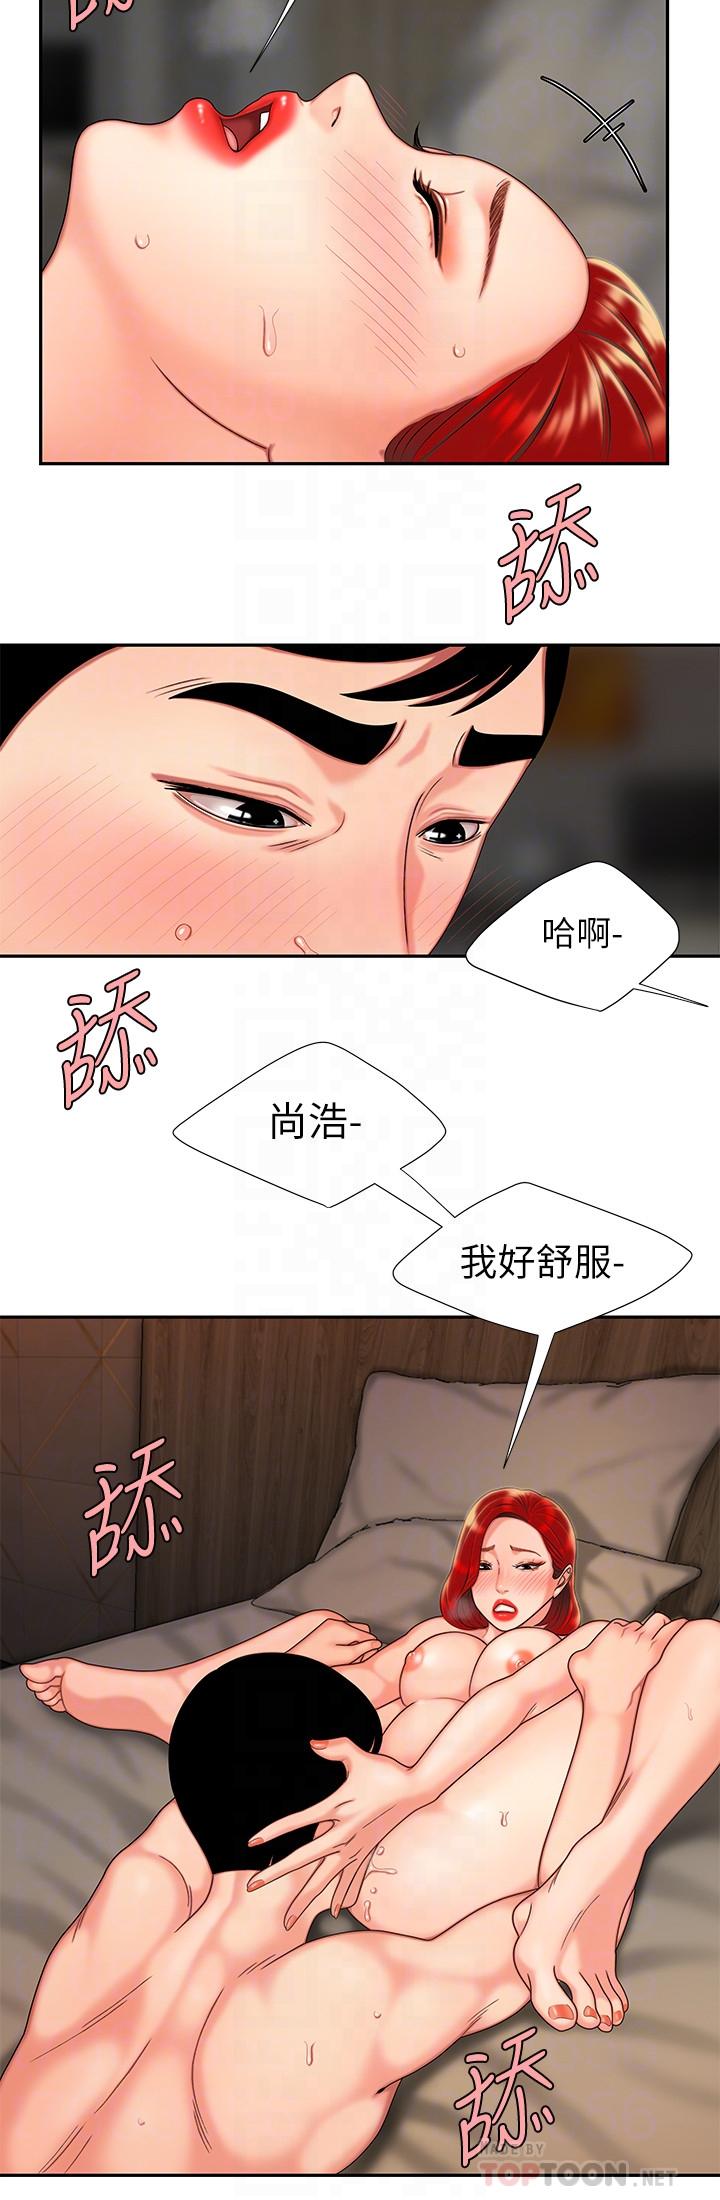 韩国污漫画 幸福外送員 第5话-老板娘溢出的蜜汁 6